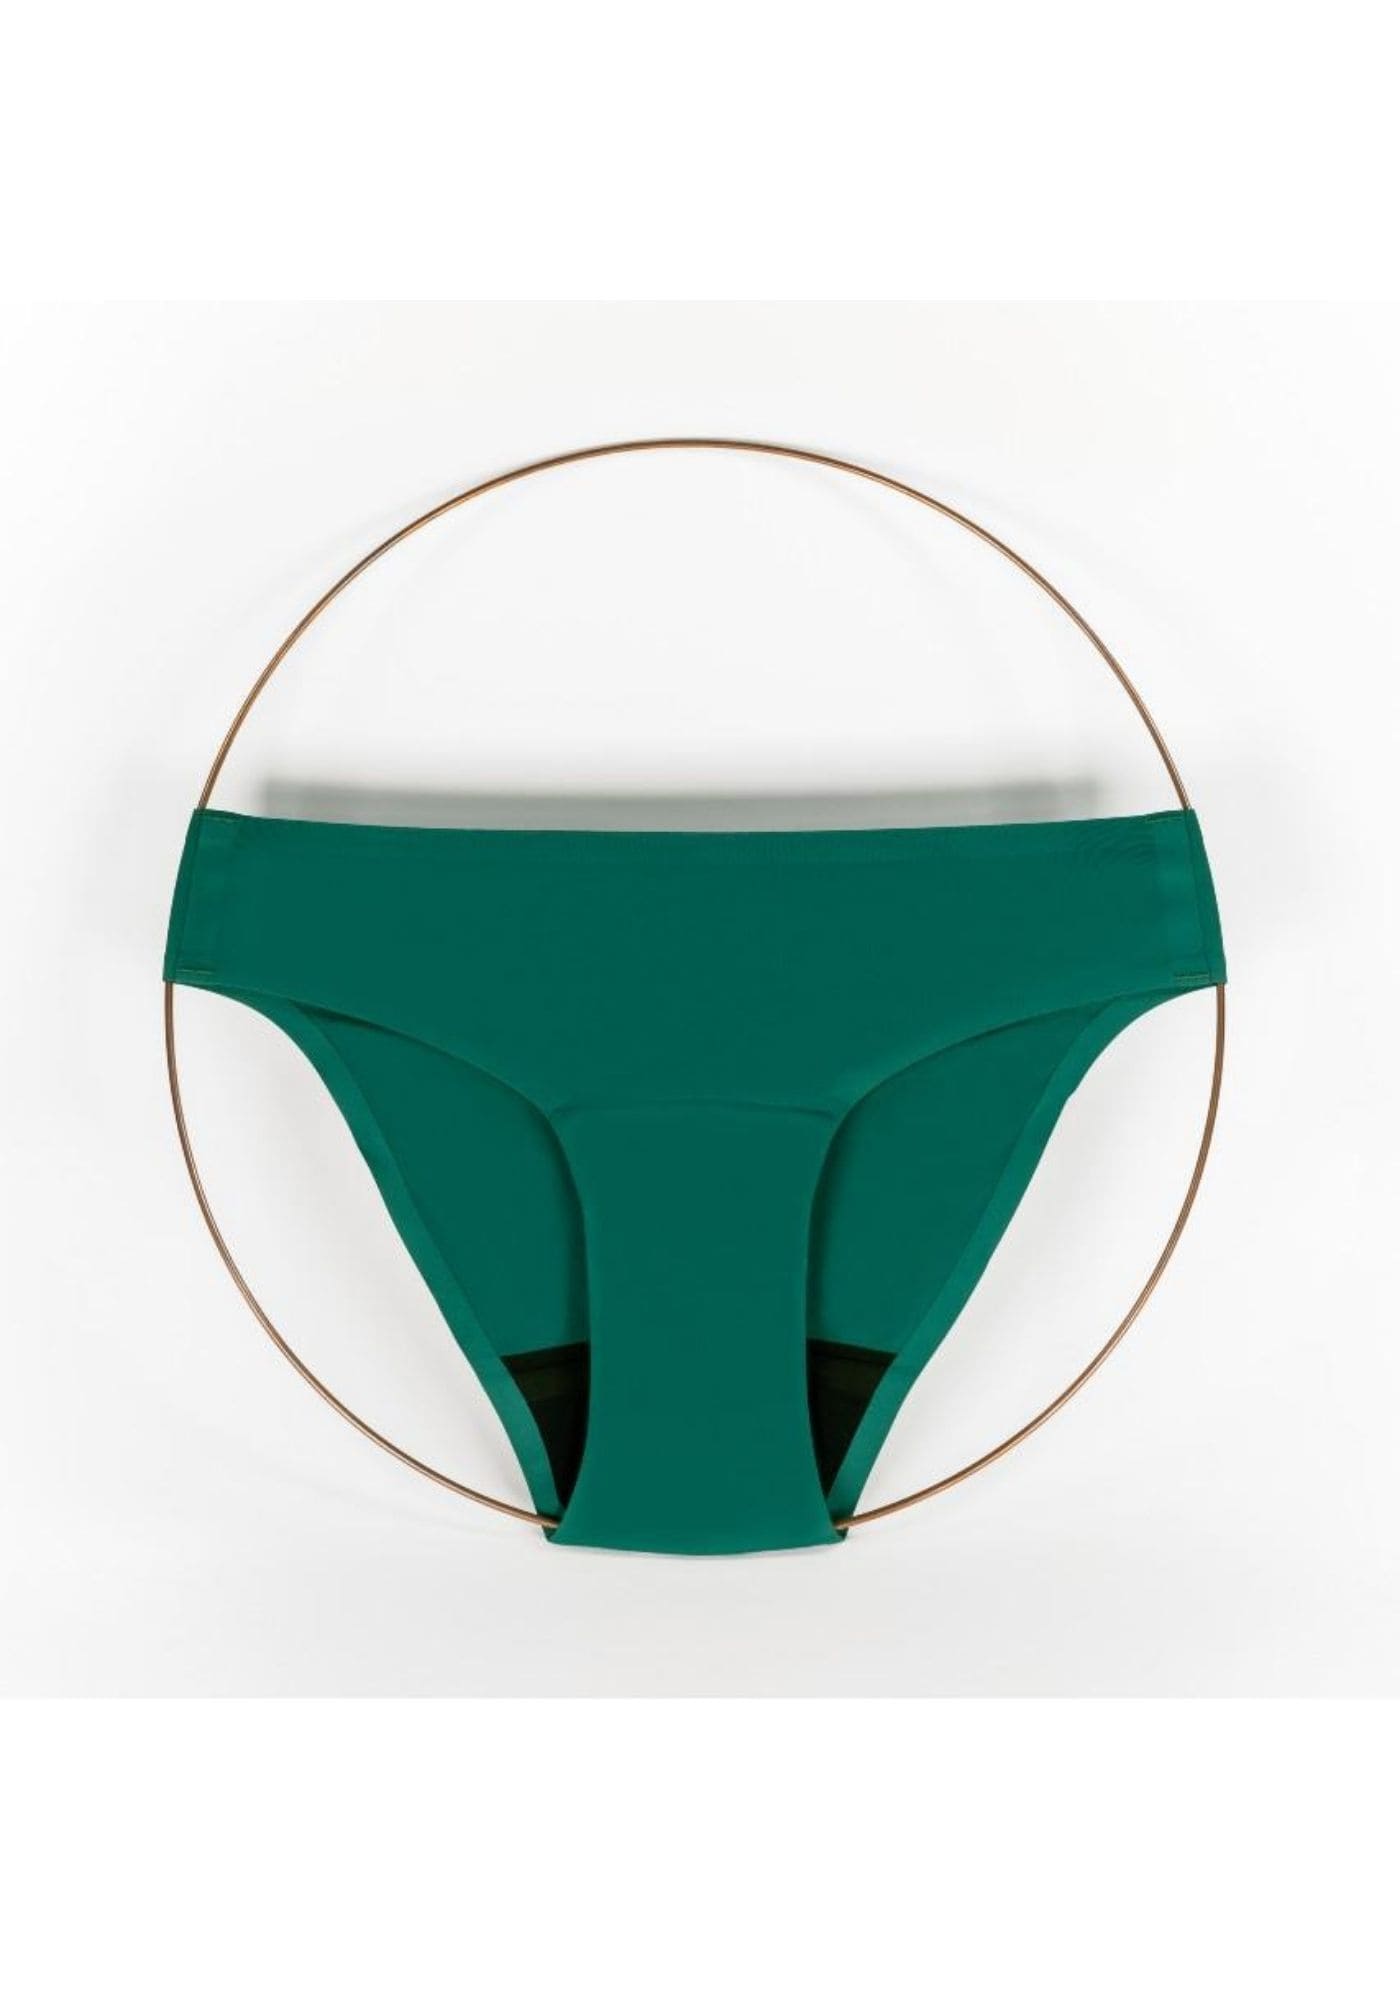 culotte-menstruelle-selene-vert-smoon-lingerie-zero-dechet-confort